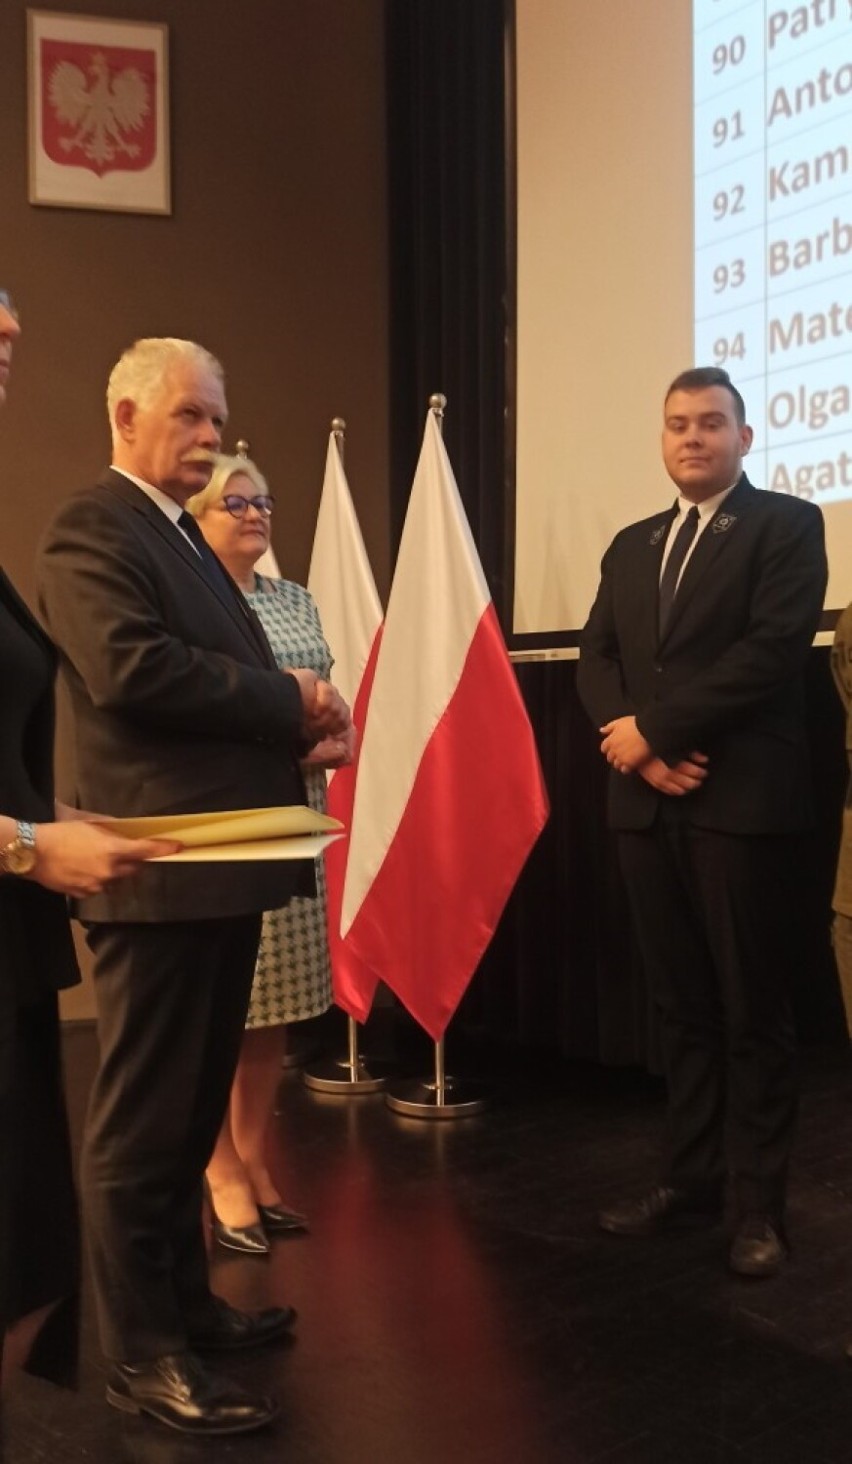 Stypendia premiera dla uczniów z Malborka. Wyróżnienia zostały wręczone podczas uroczystości w Gdańsku